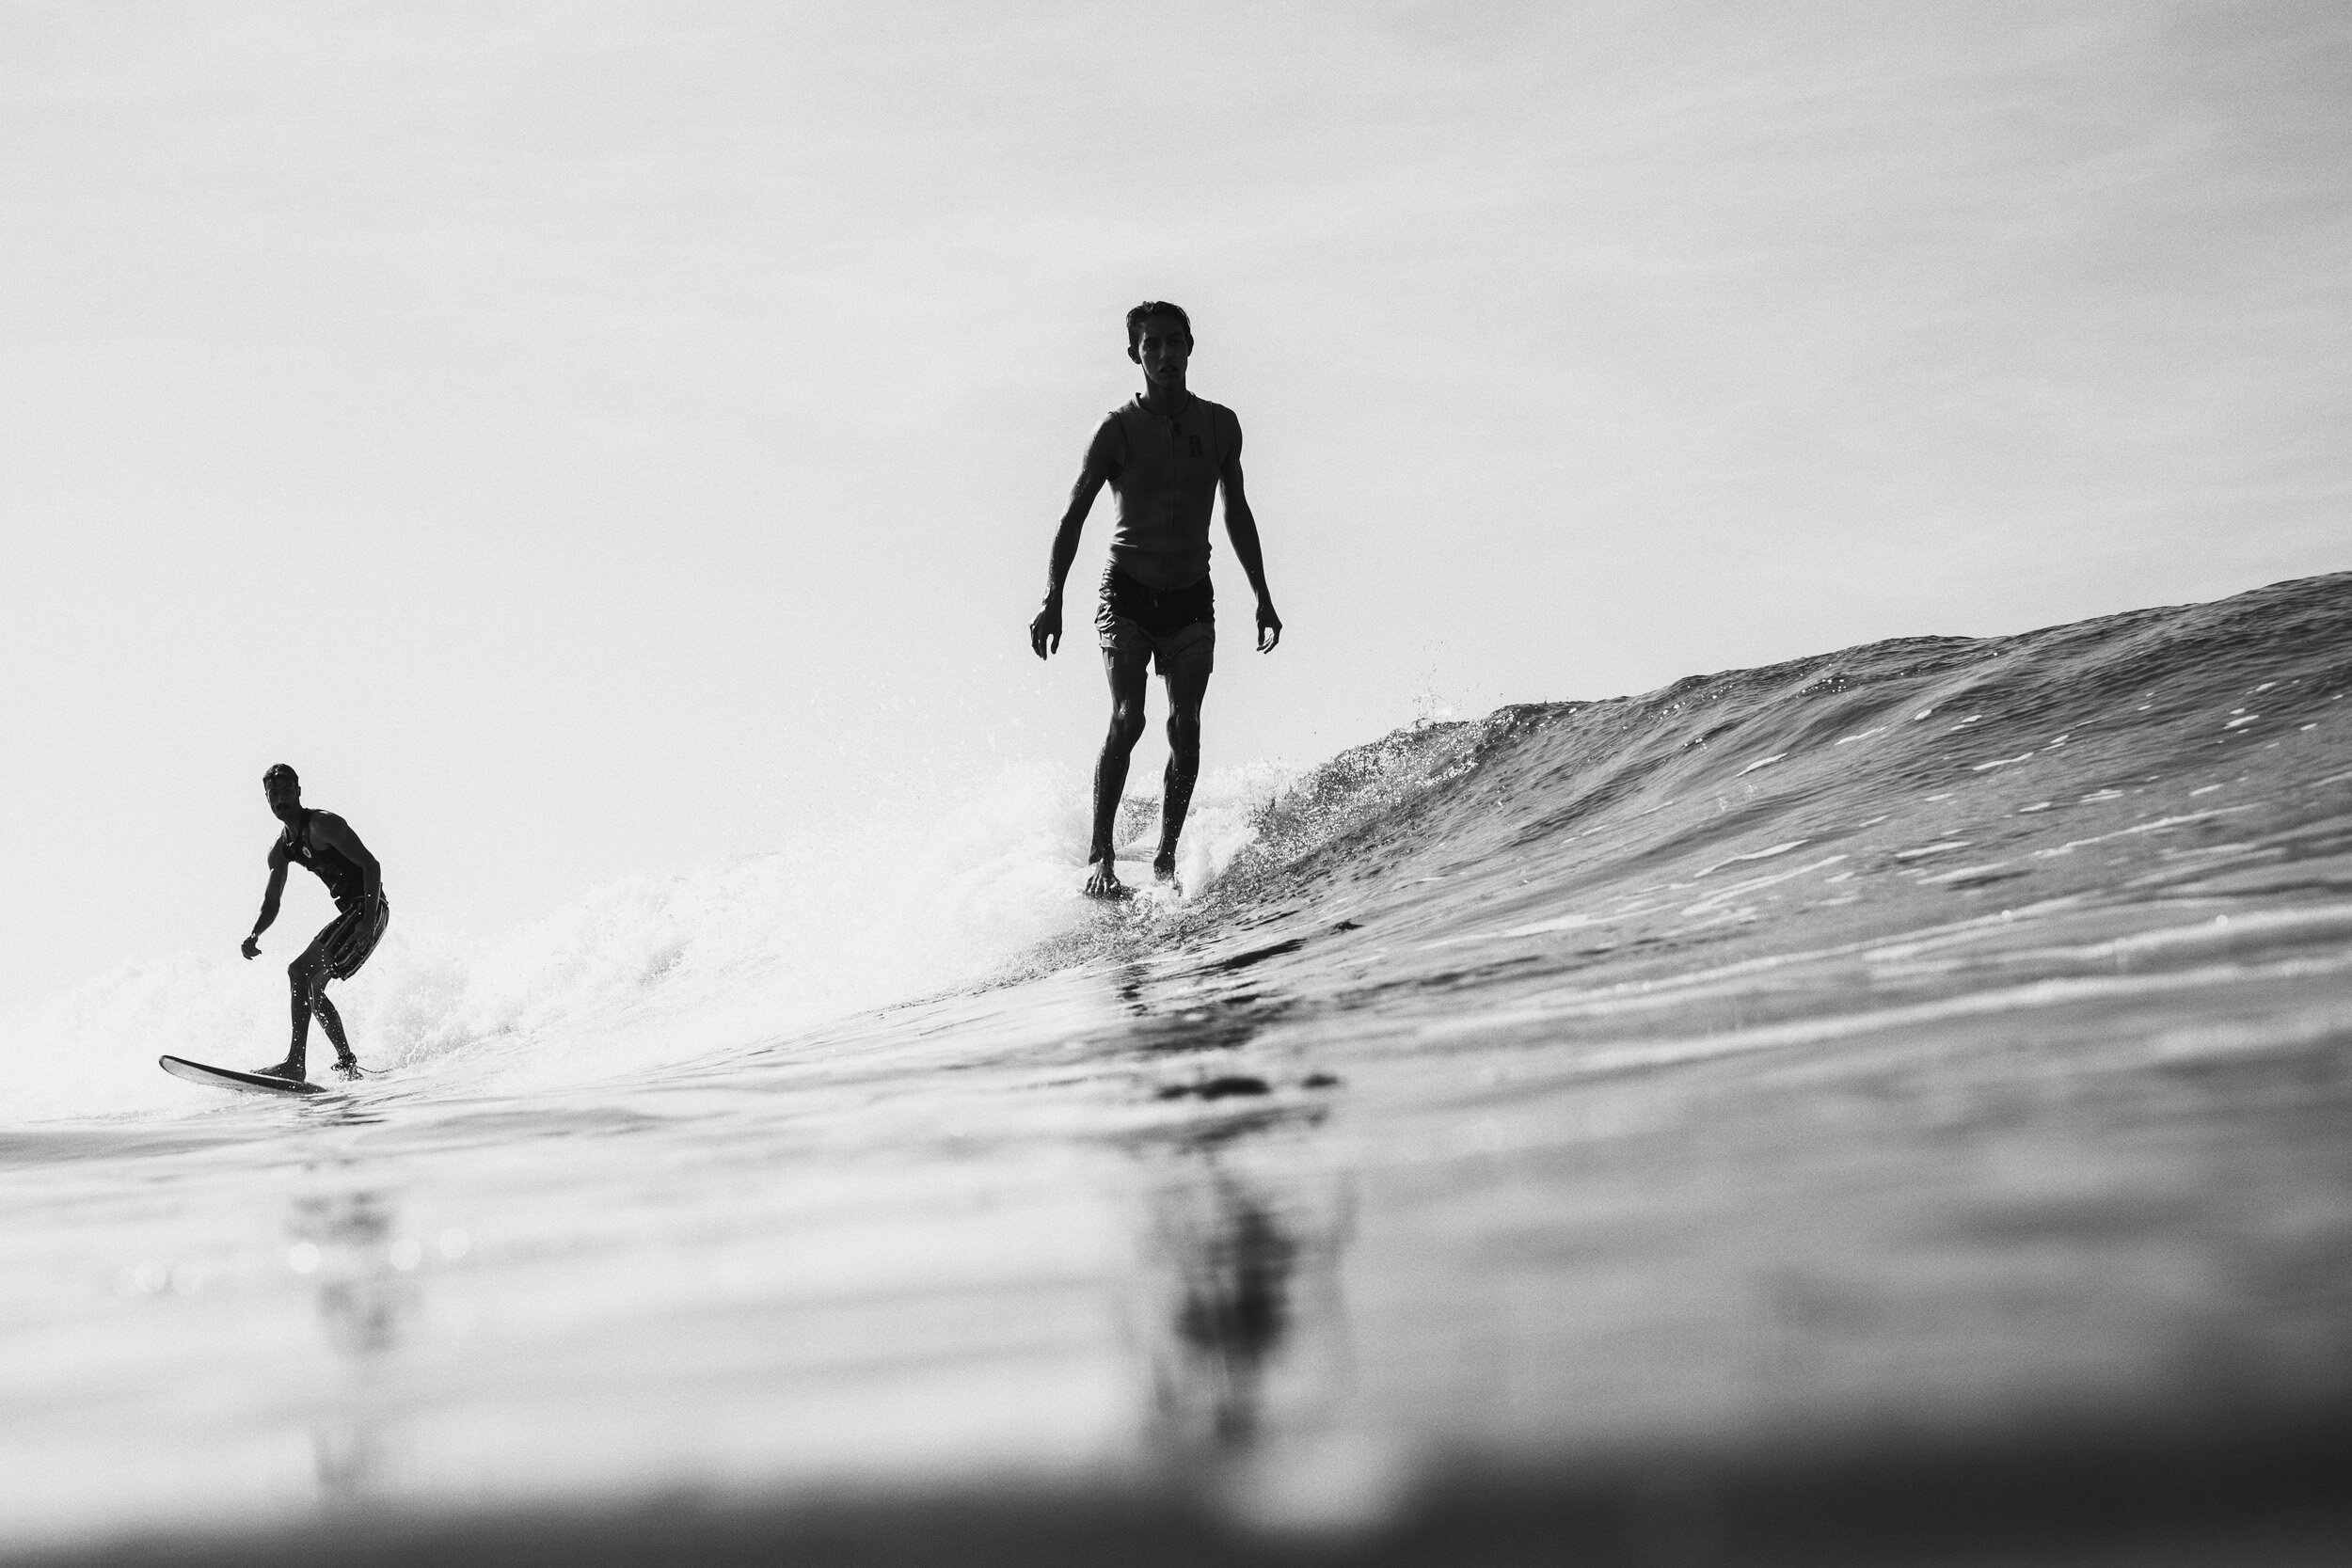 la-saladita-mexico-surf-longboard-fotografia-heiko-bothe-2142.jpg